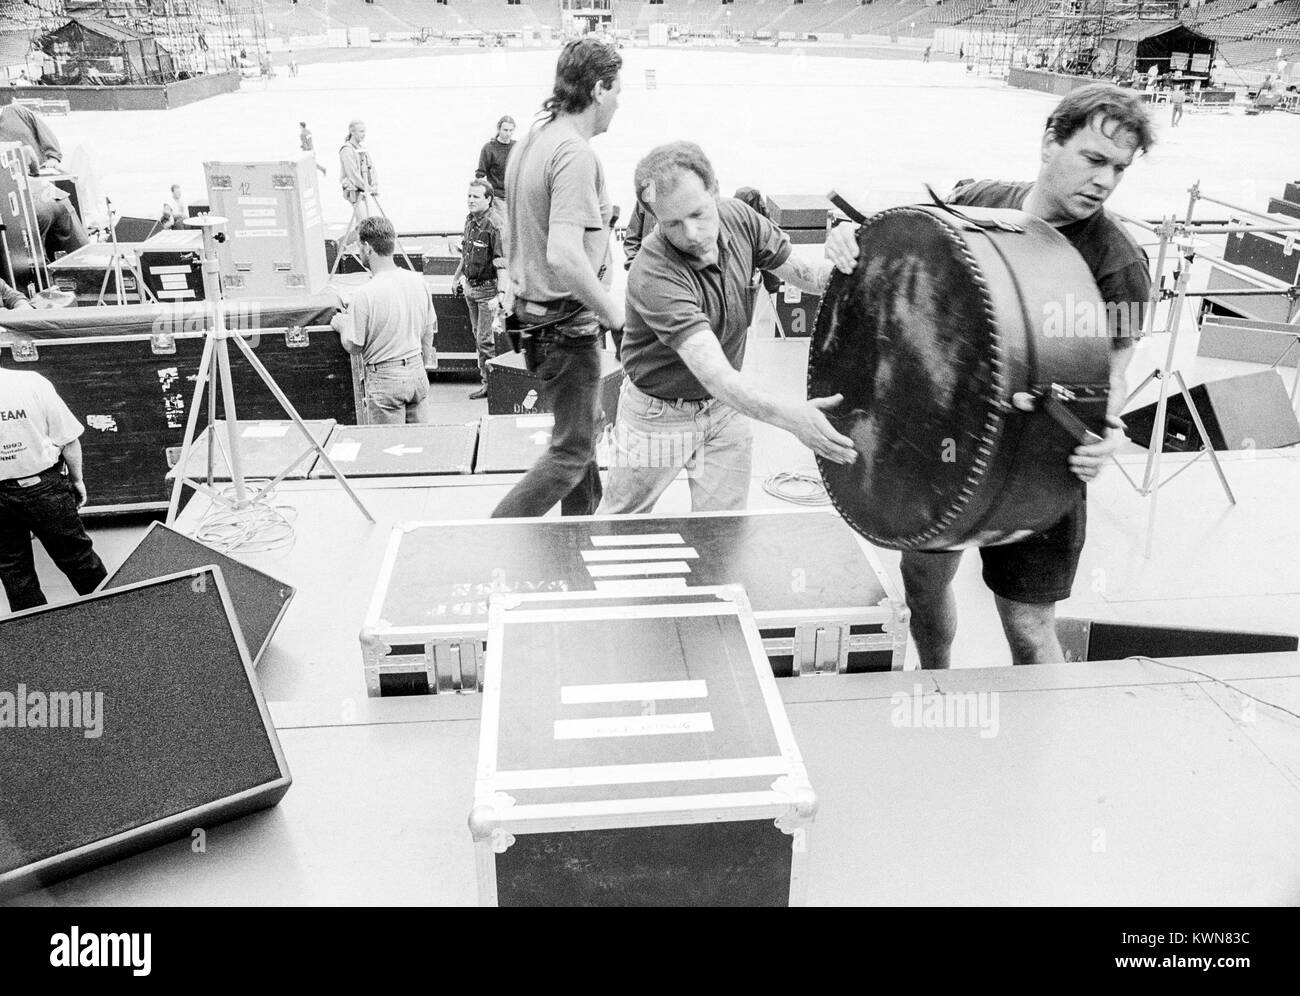 Edwin Shirley équipage Mise en scène la construction d'un stade de Wembley pour la tournée de concerts de Jean Michel Jarre, Europe en concert, Londres, 26 - 28 août 1993 Banque D'Images